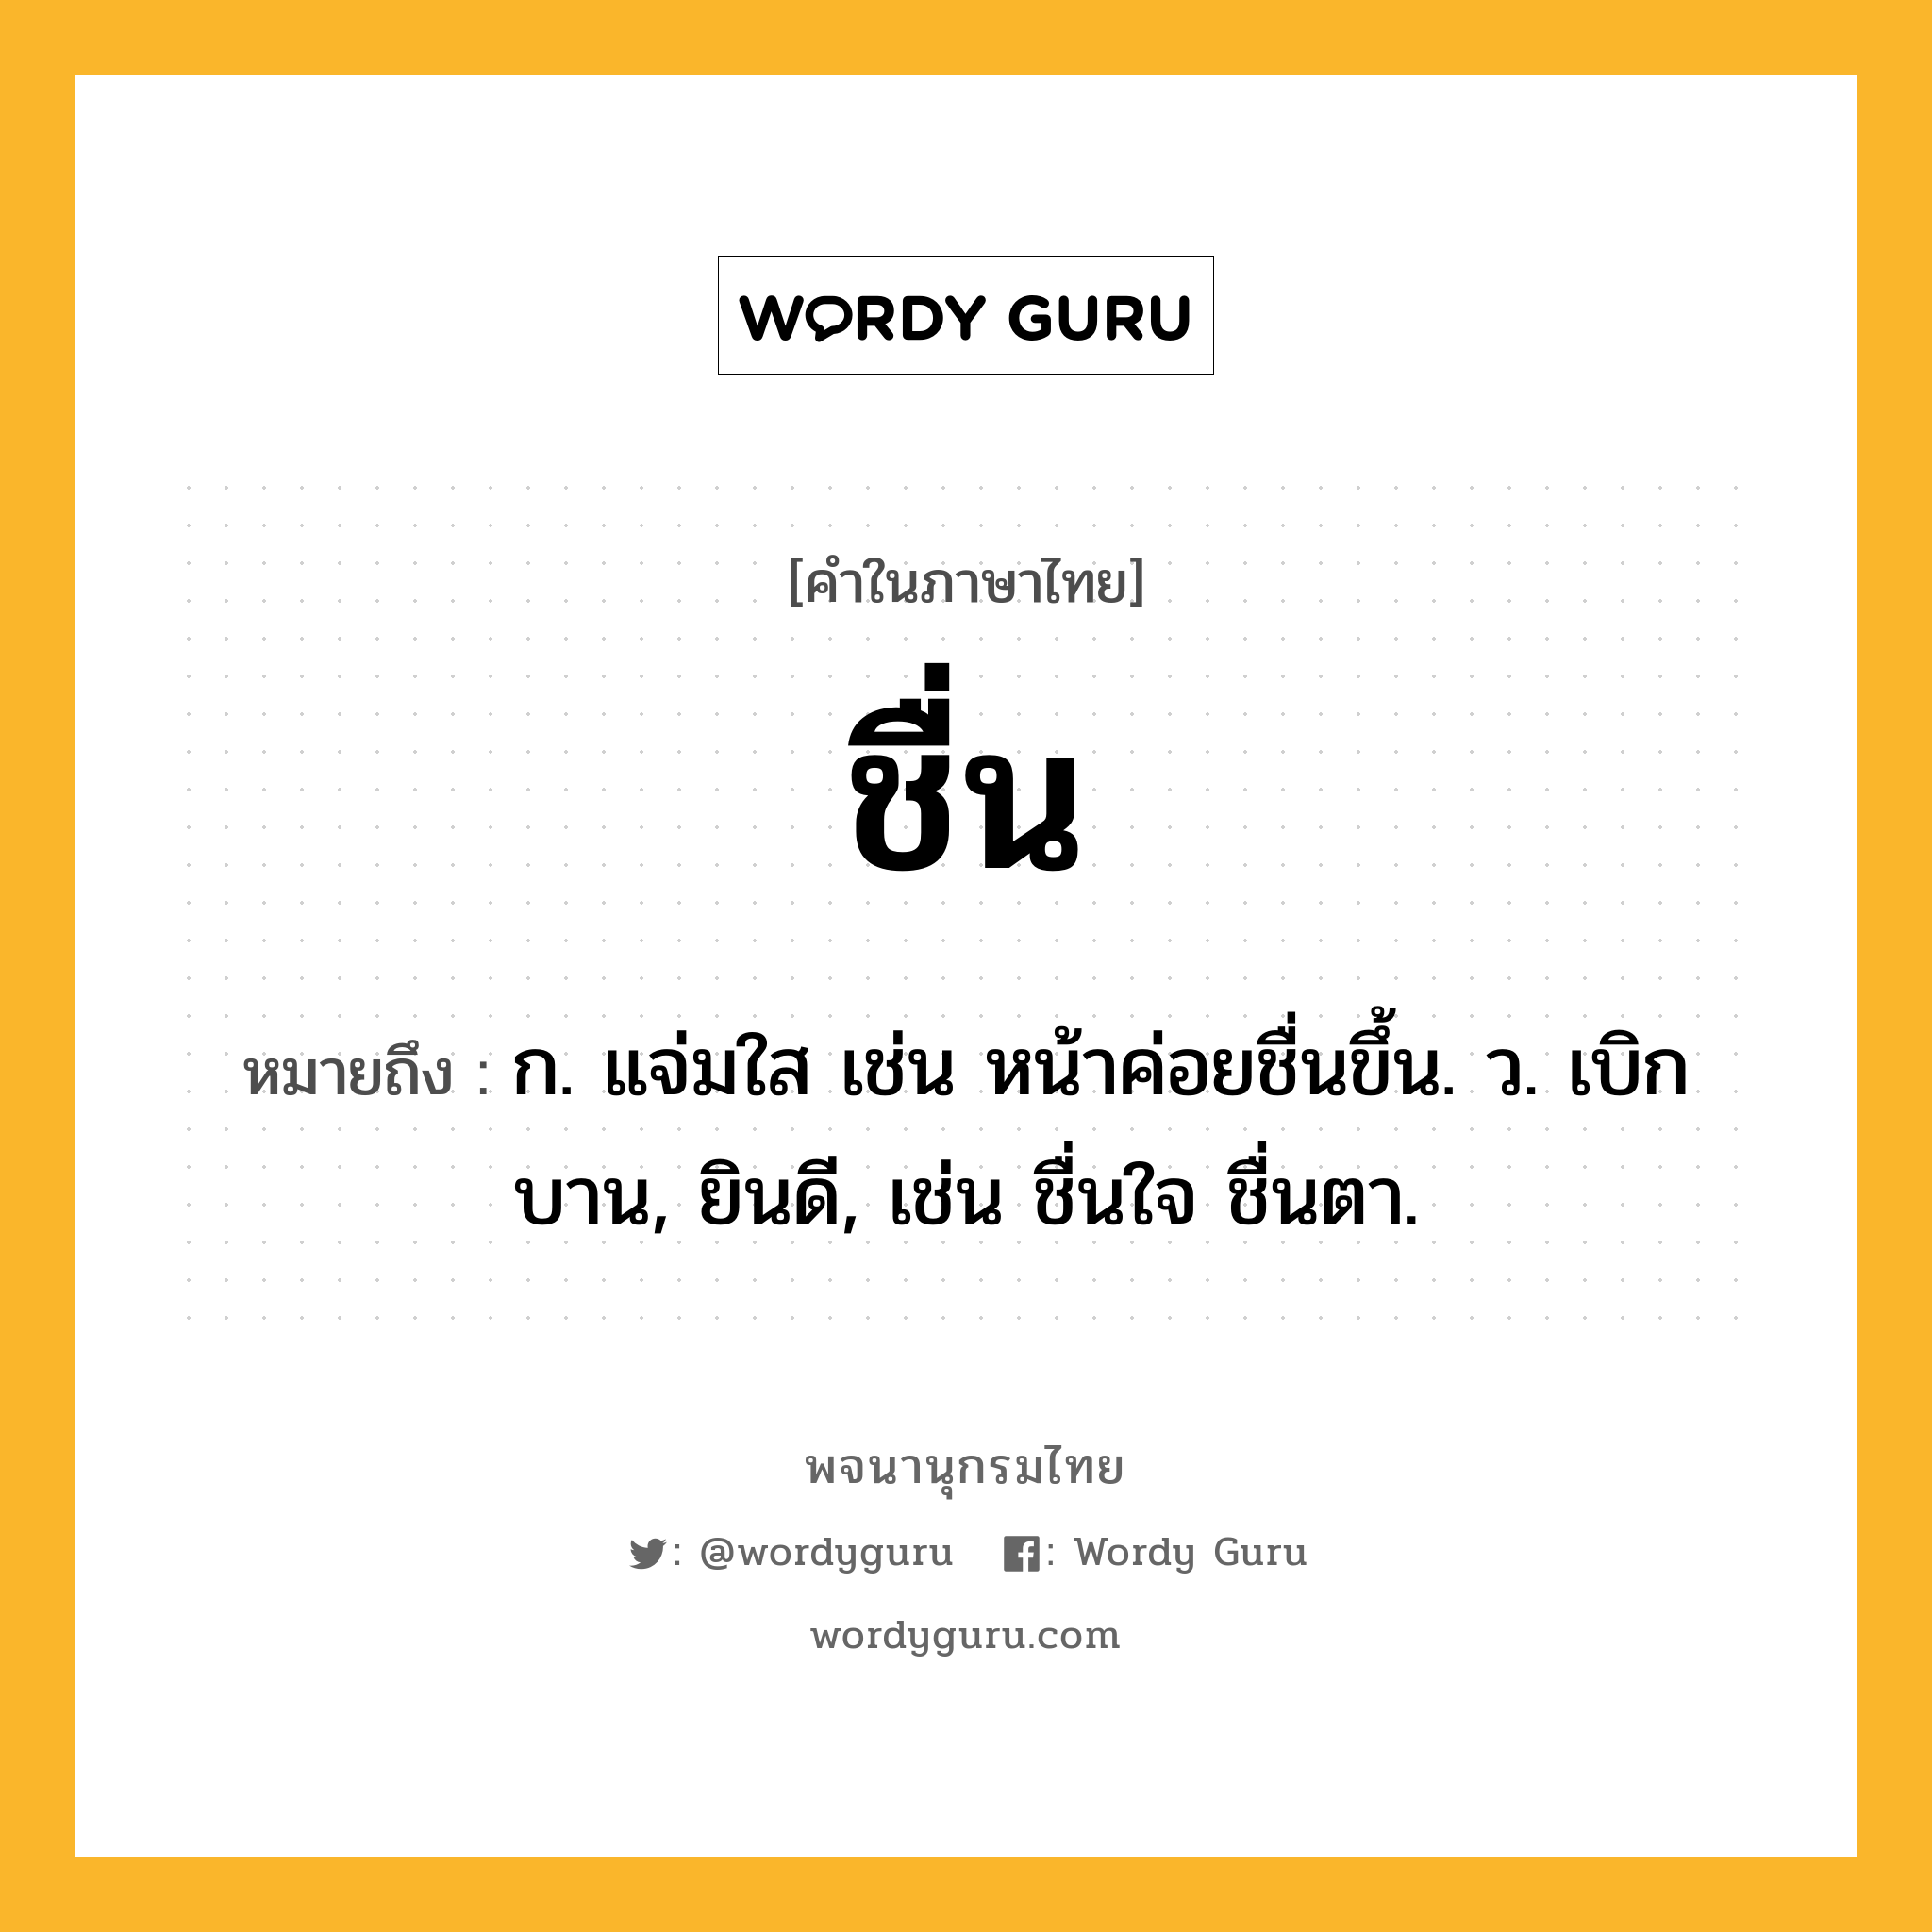 ชื่น ความหมาย หมายถึงอะไร?, คำในภาษาไทย ชื่น หมายถึง ก. แจ่มใส เช่น หน้าค่อยชื่นขึ้น. ว. เบิกบาน, ยินดี, เช่น ชื่นใจ ชื่นตา.